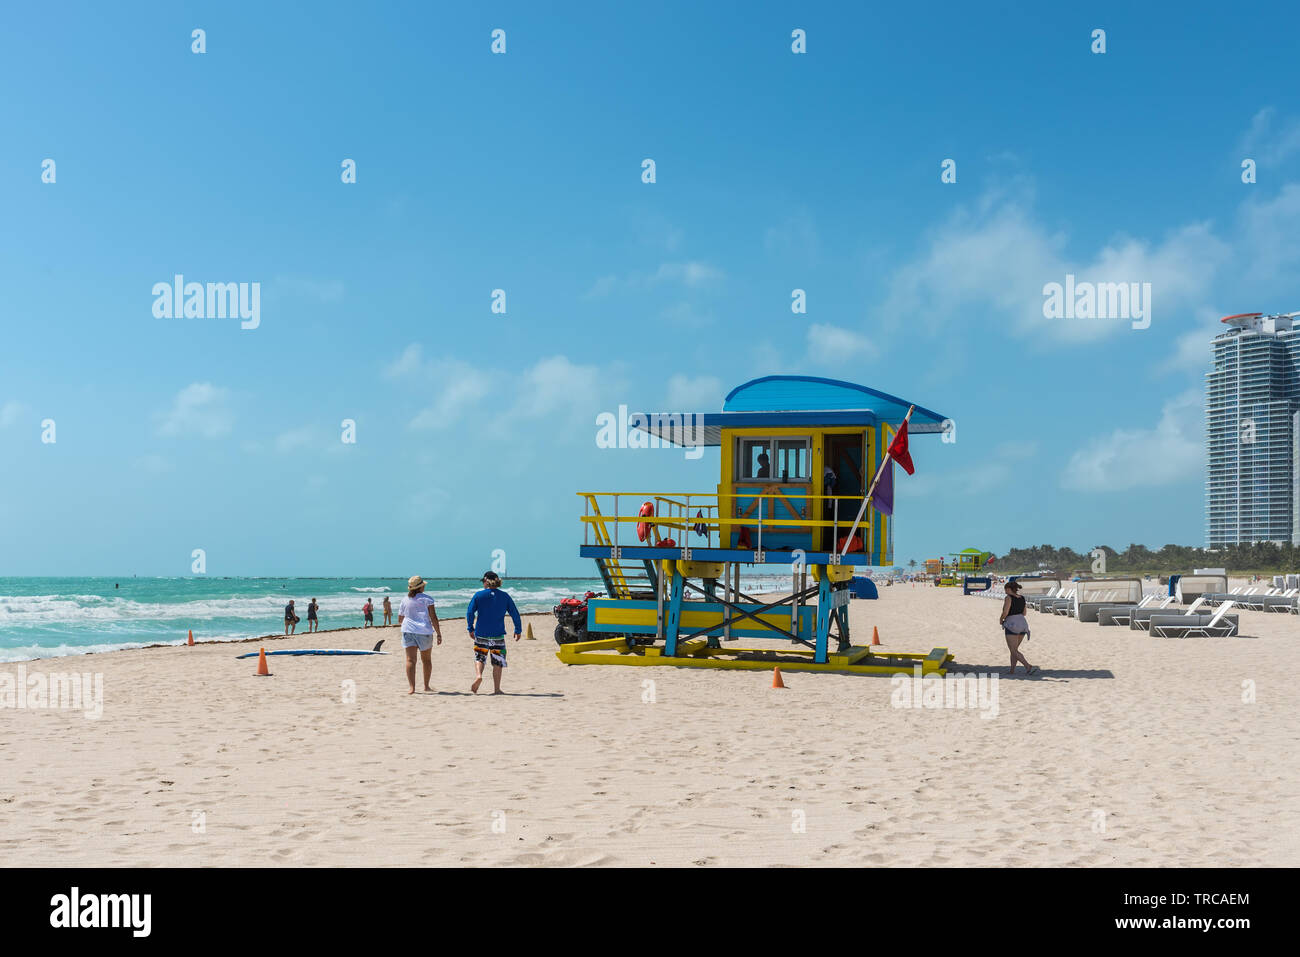 Miami, FL, USA - Le 19 avril 2019 : Le sauveteur tour dans un style Art Déco, avec ciel bleu et l'océan Atlantique à l'arrière-plan. Célèbre billet loca Banque D'Images